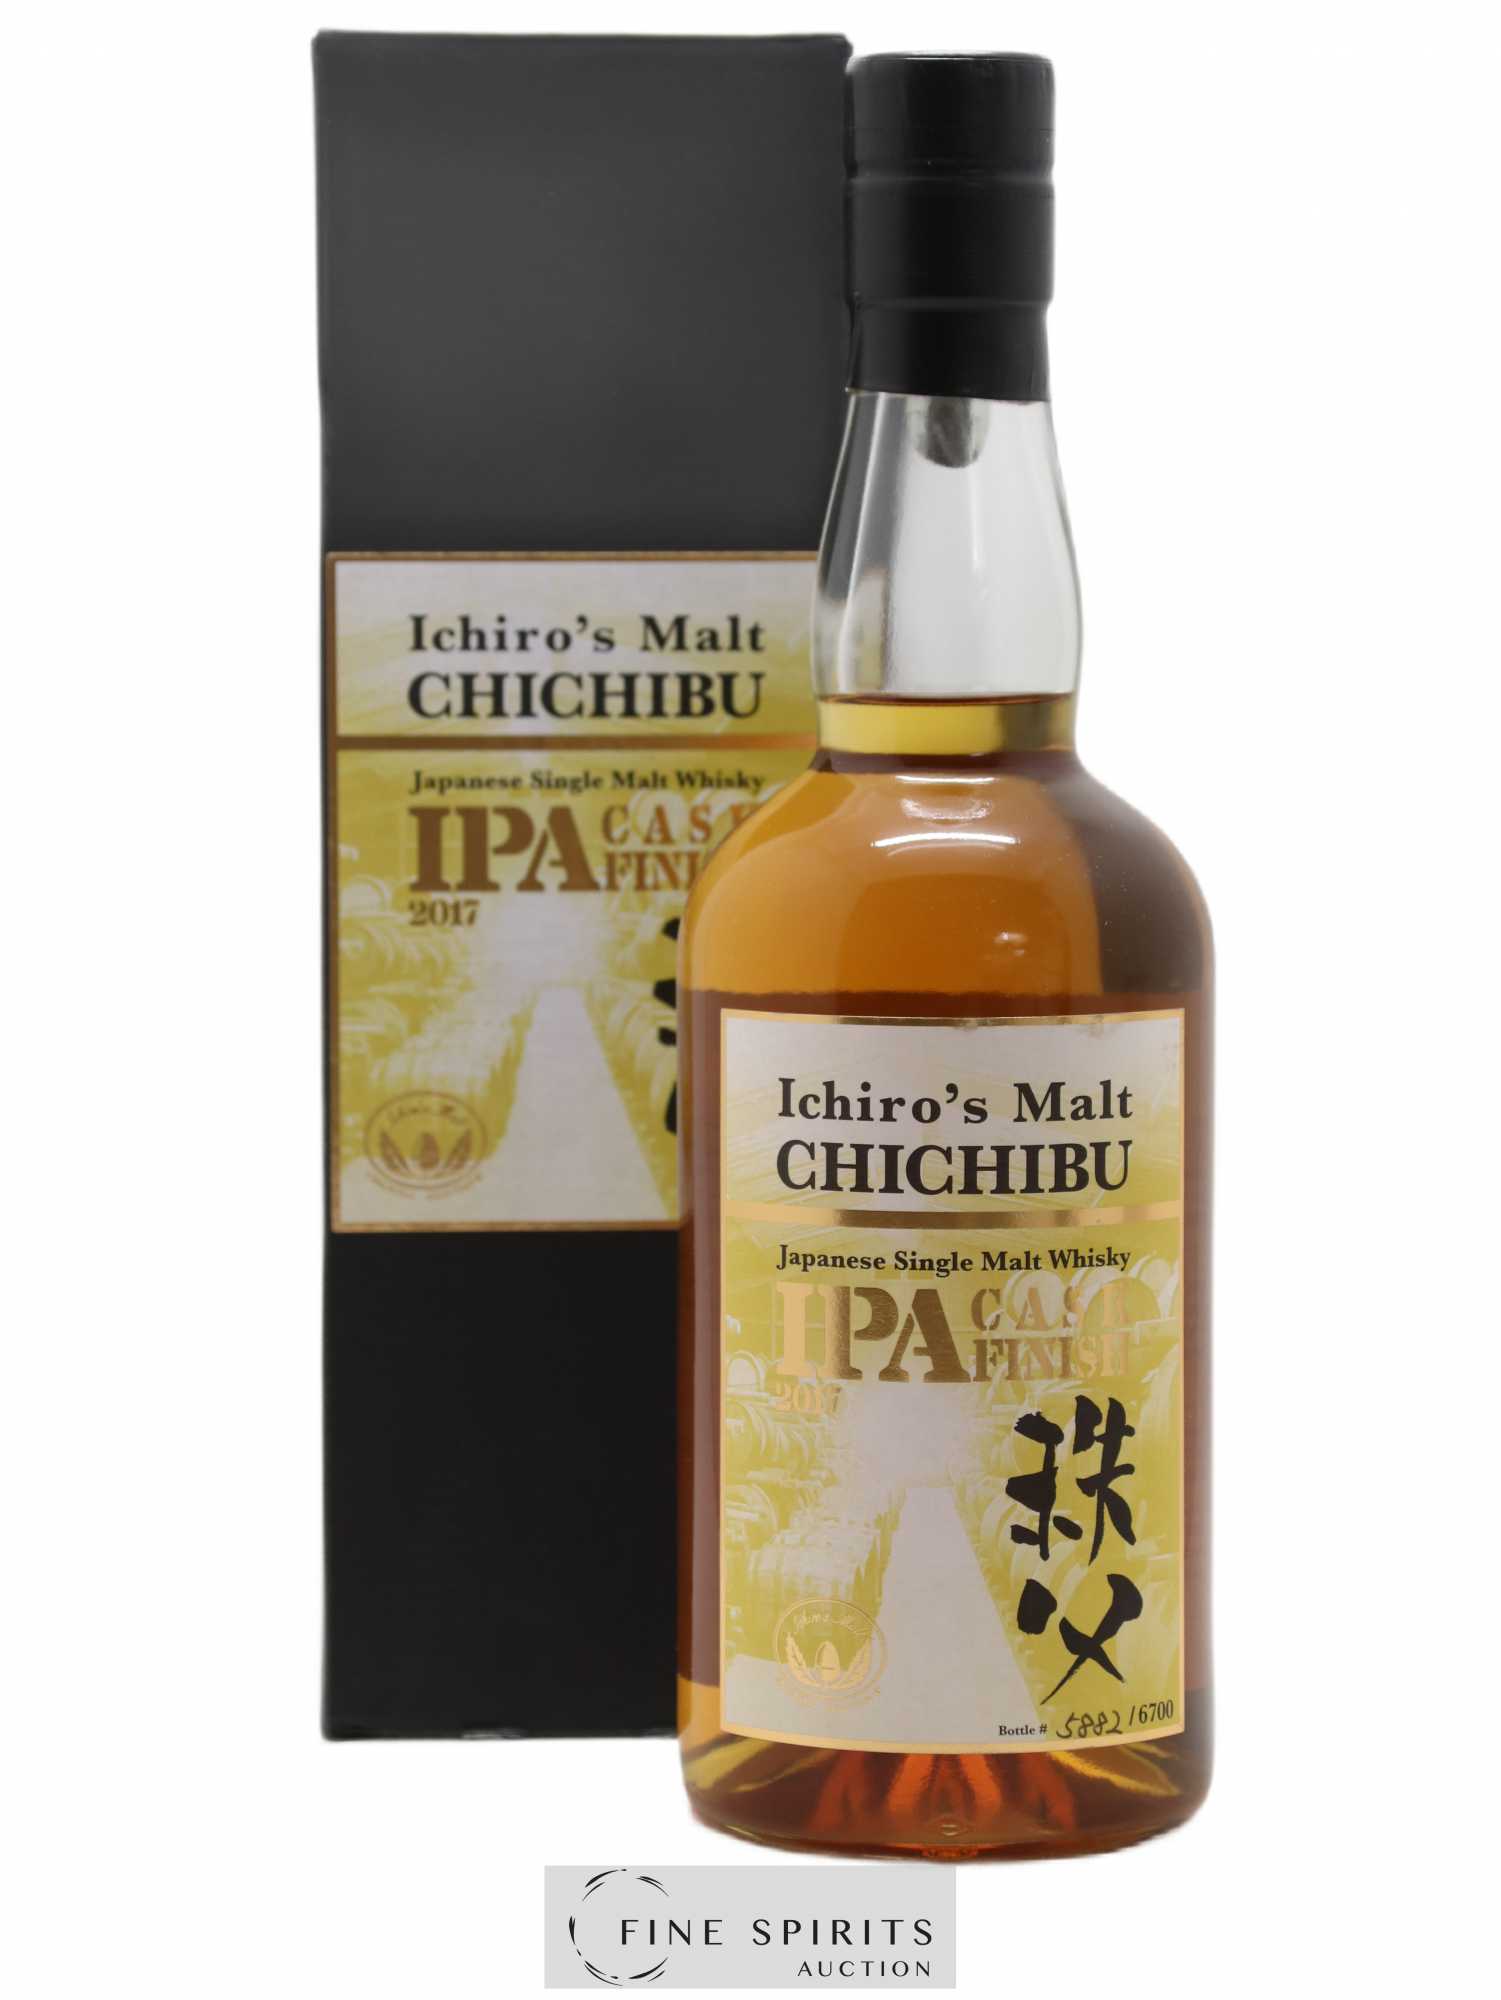 Chichibu Of. Ipa Cask Finish 2017 Release - One of 6700 Ichiro's Malt 